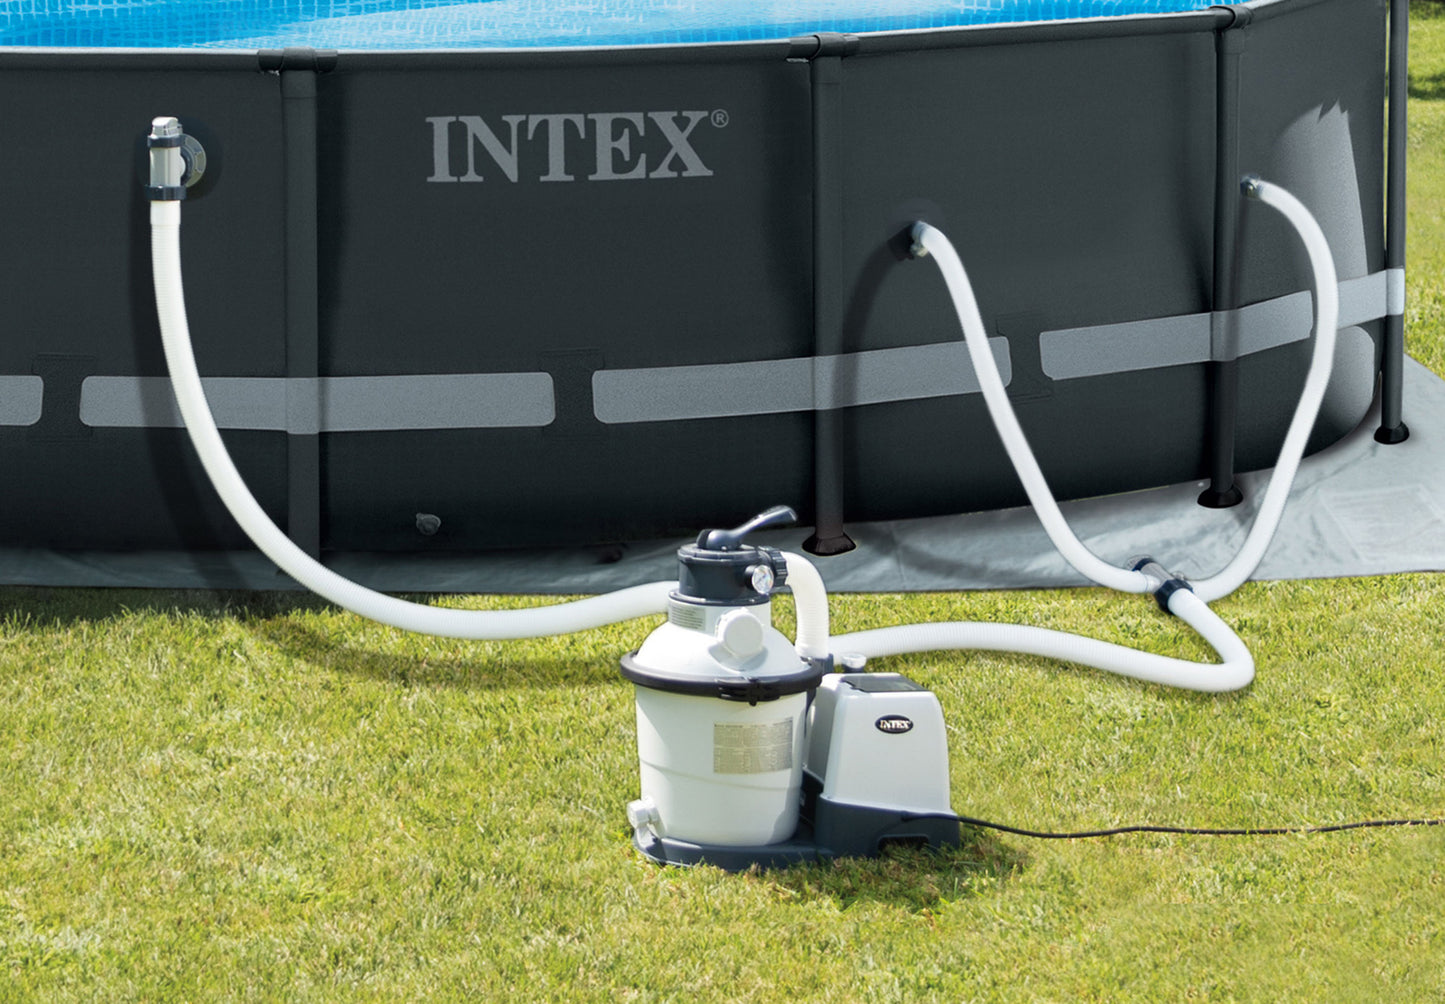 Intex 1.5 inch Diameter Replacement Pool Hose